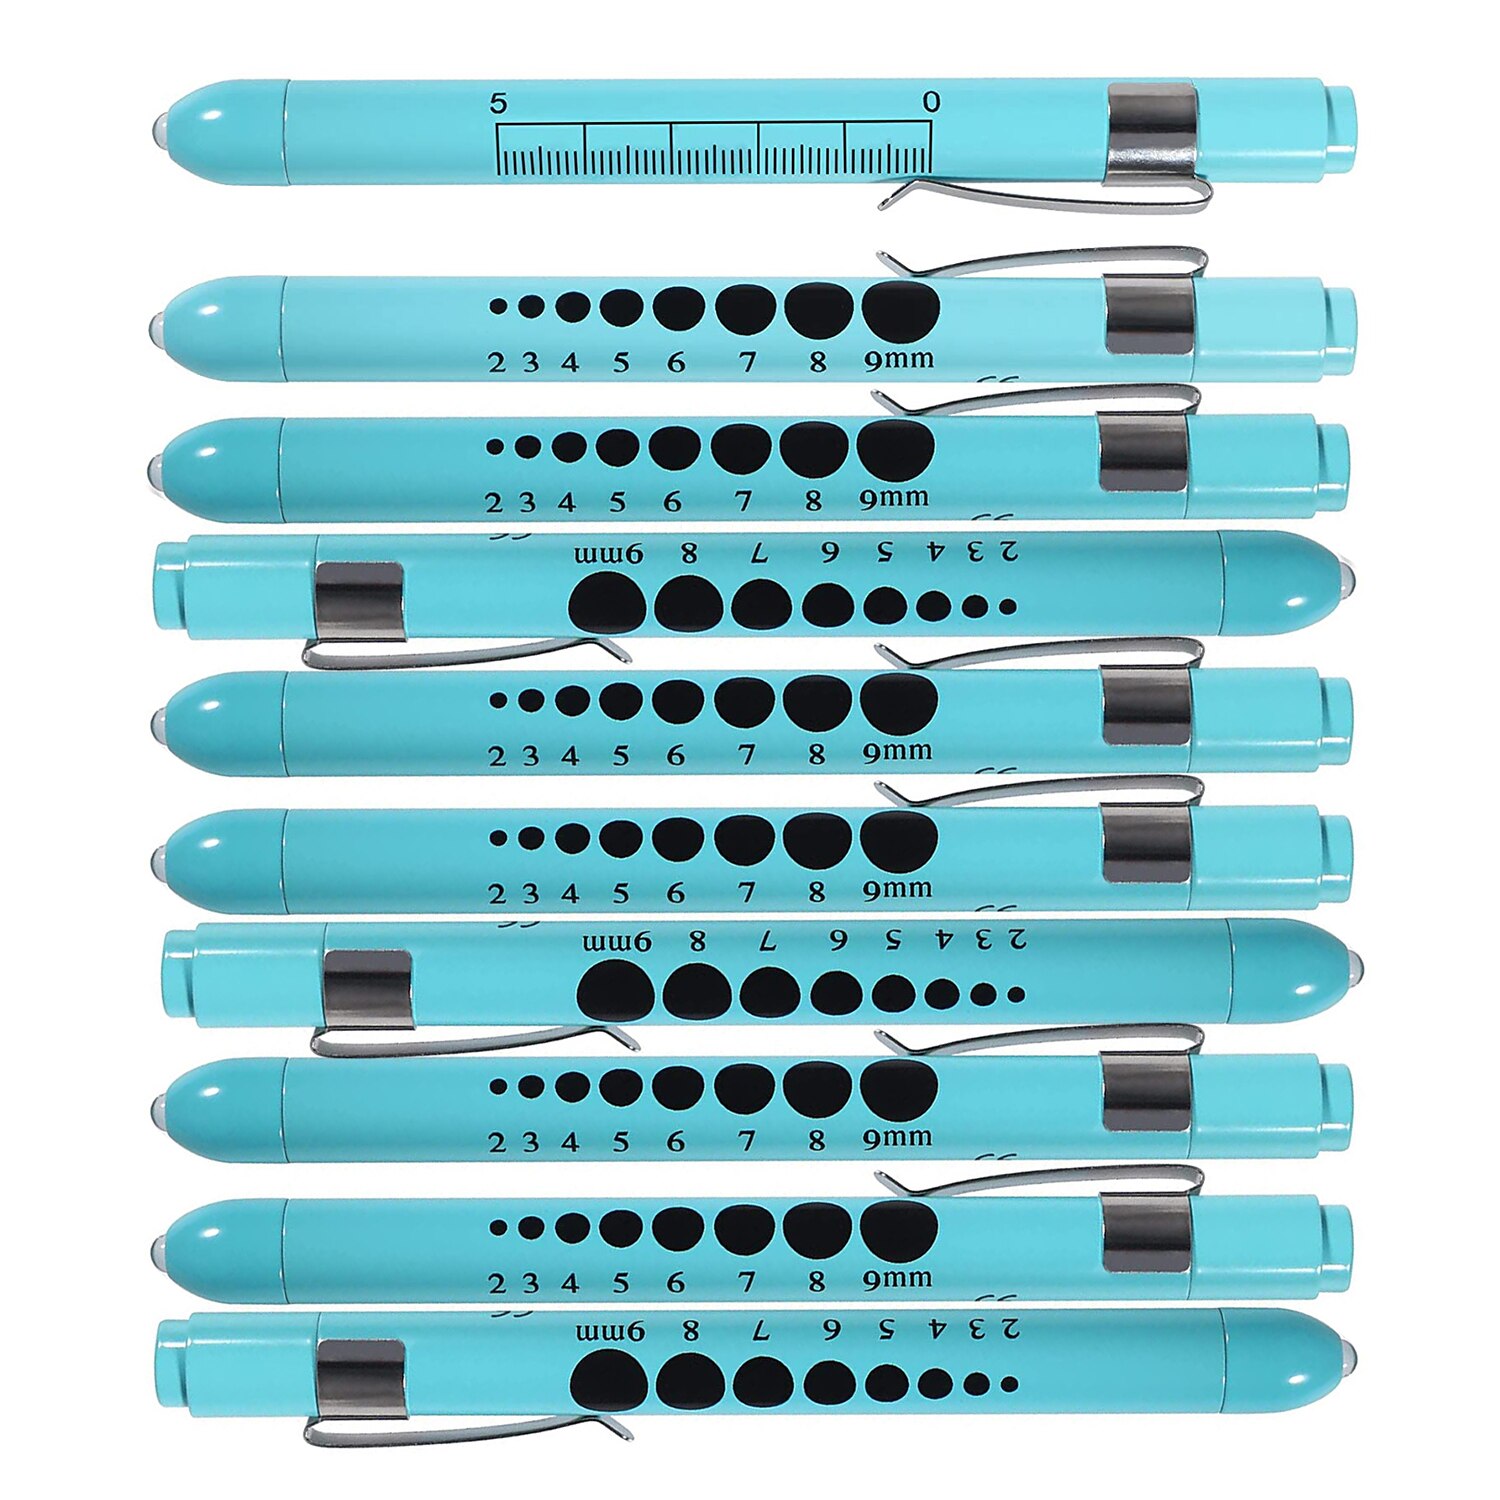 10 pcs 파란색 재사용 가능한 led 펜 빛 휴대용 의료 응급 처치 토치 램프 학생 게이지 측정 의사 간호사 진단 펜